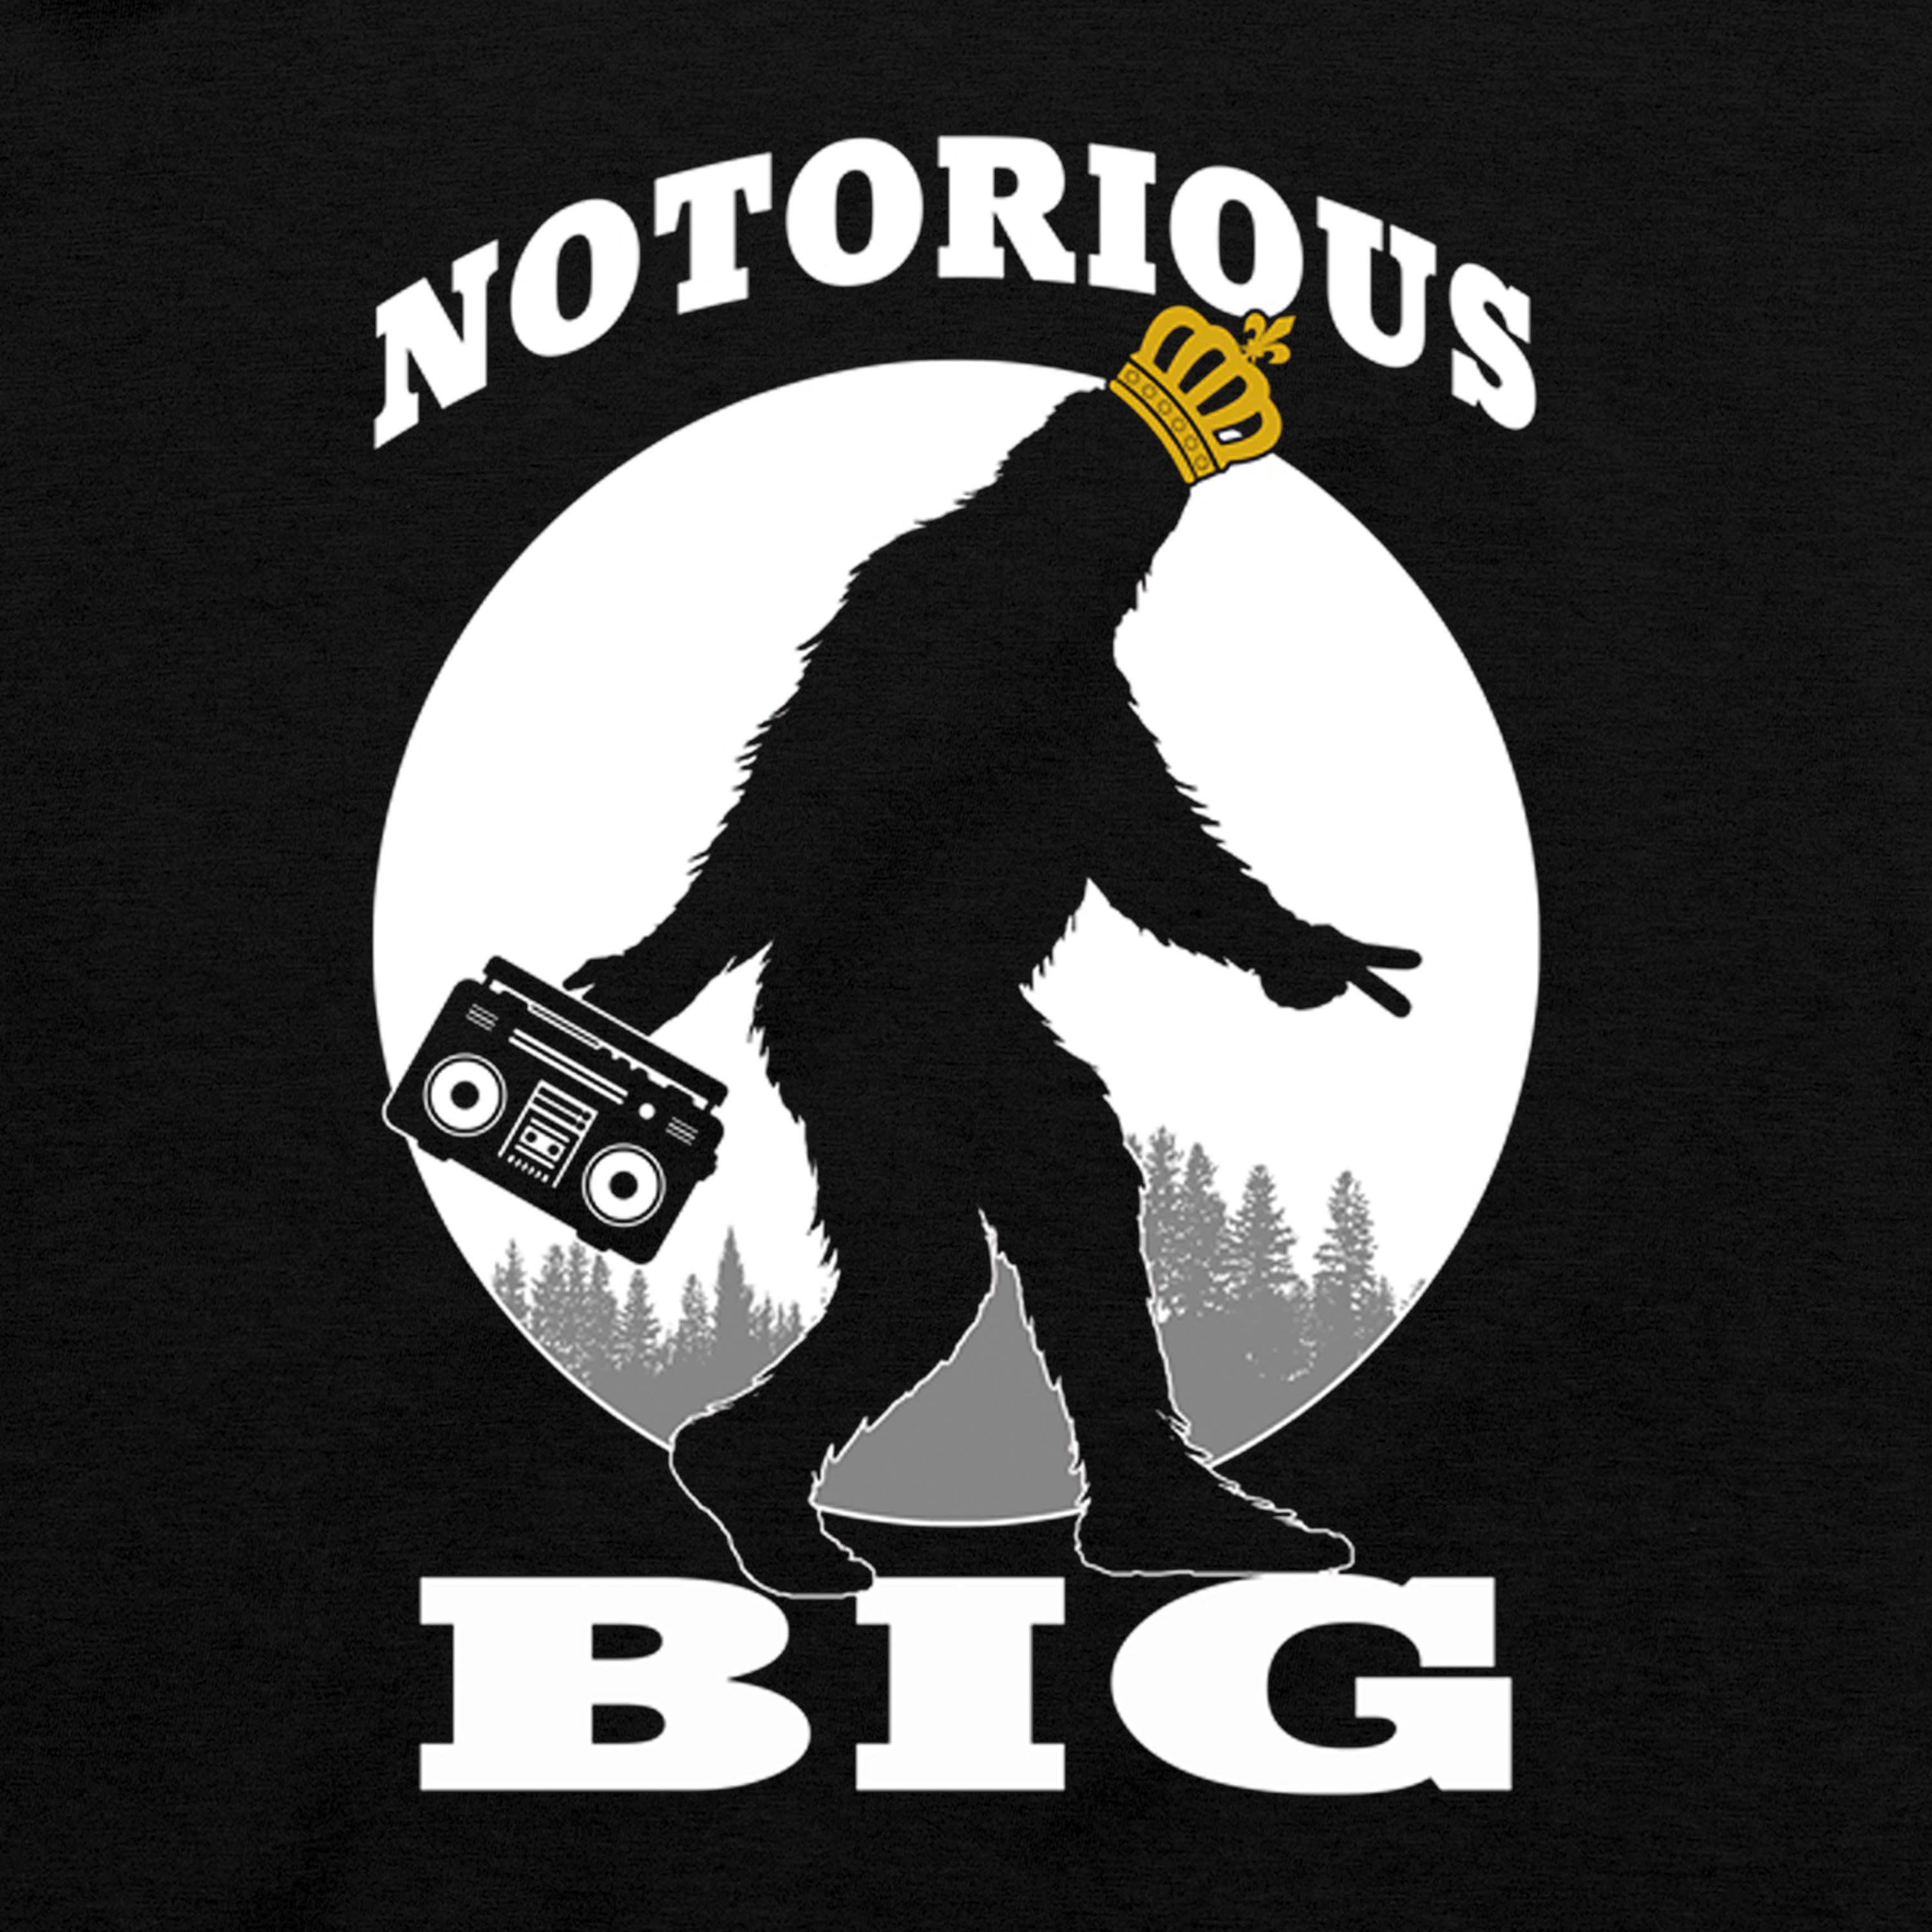 Bass Pro Shops® Men’s Notorious Big Short-Sleeve T-Shirt